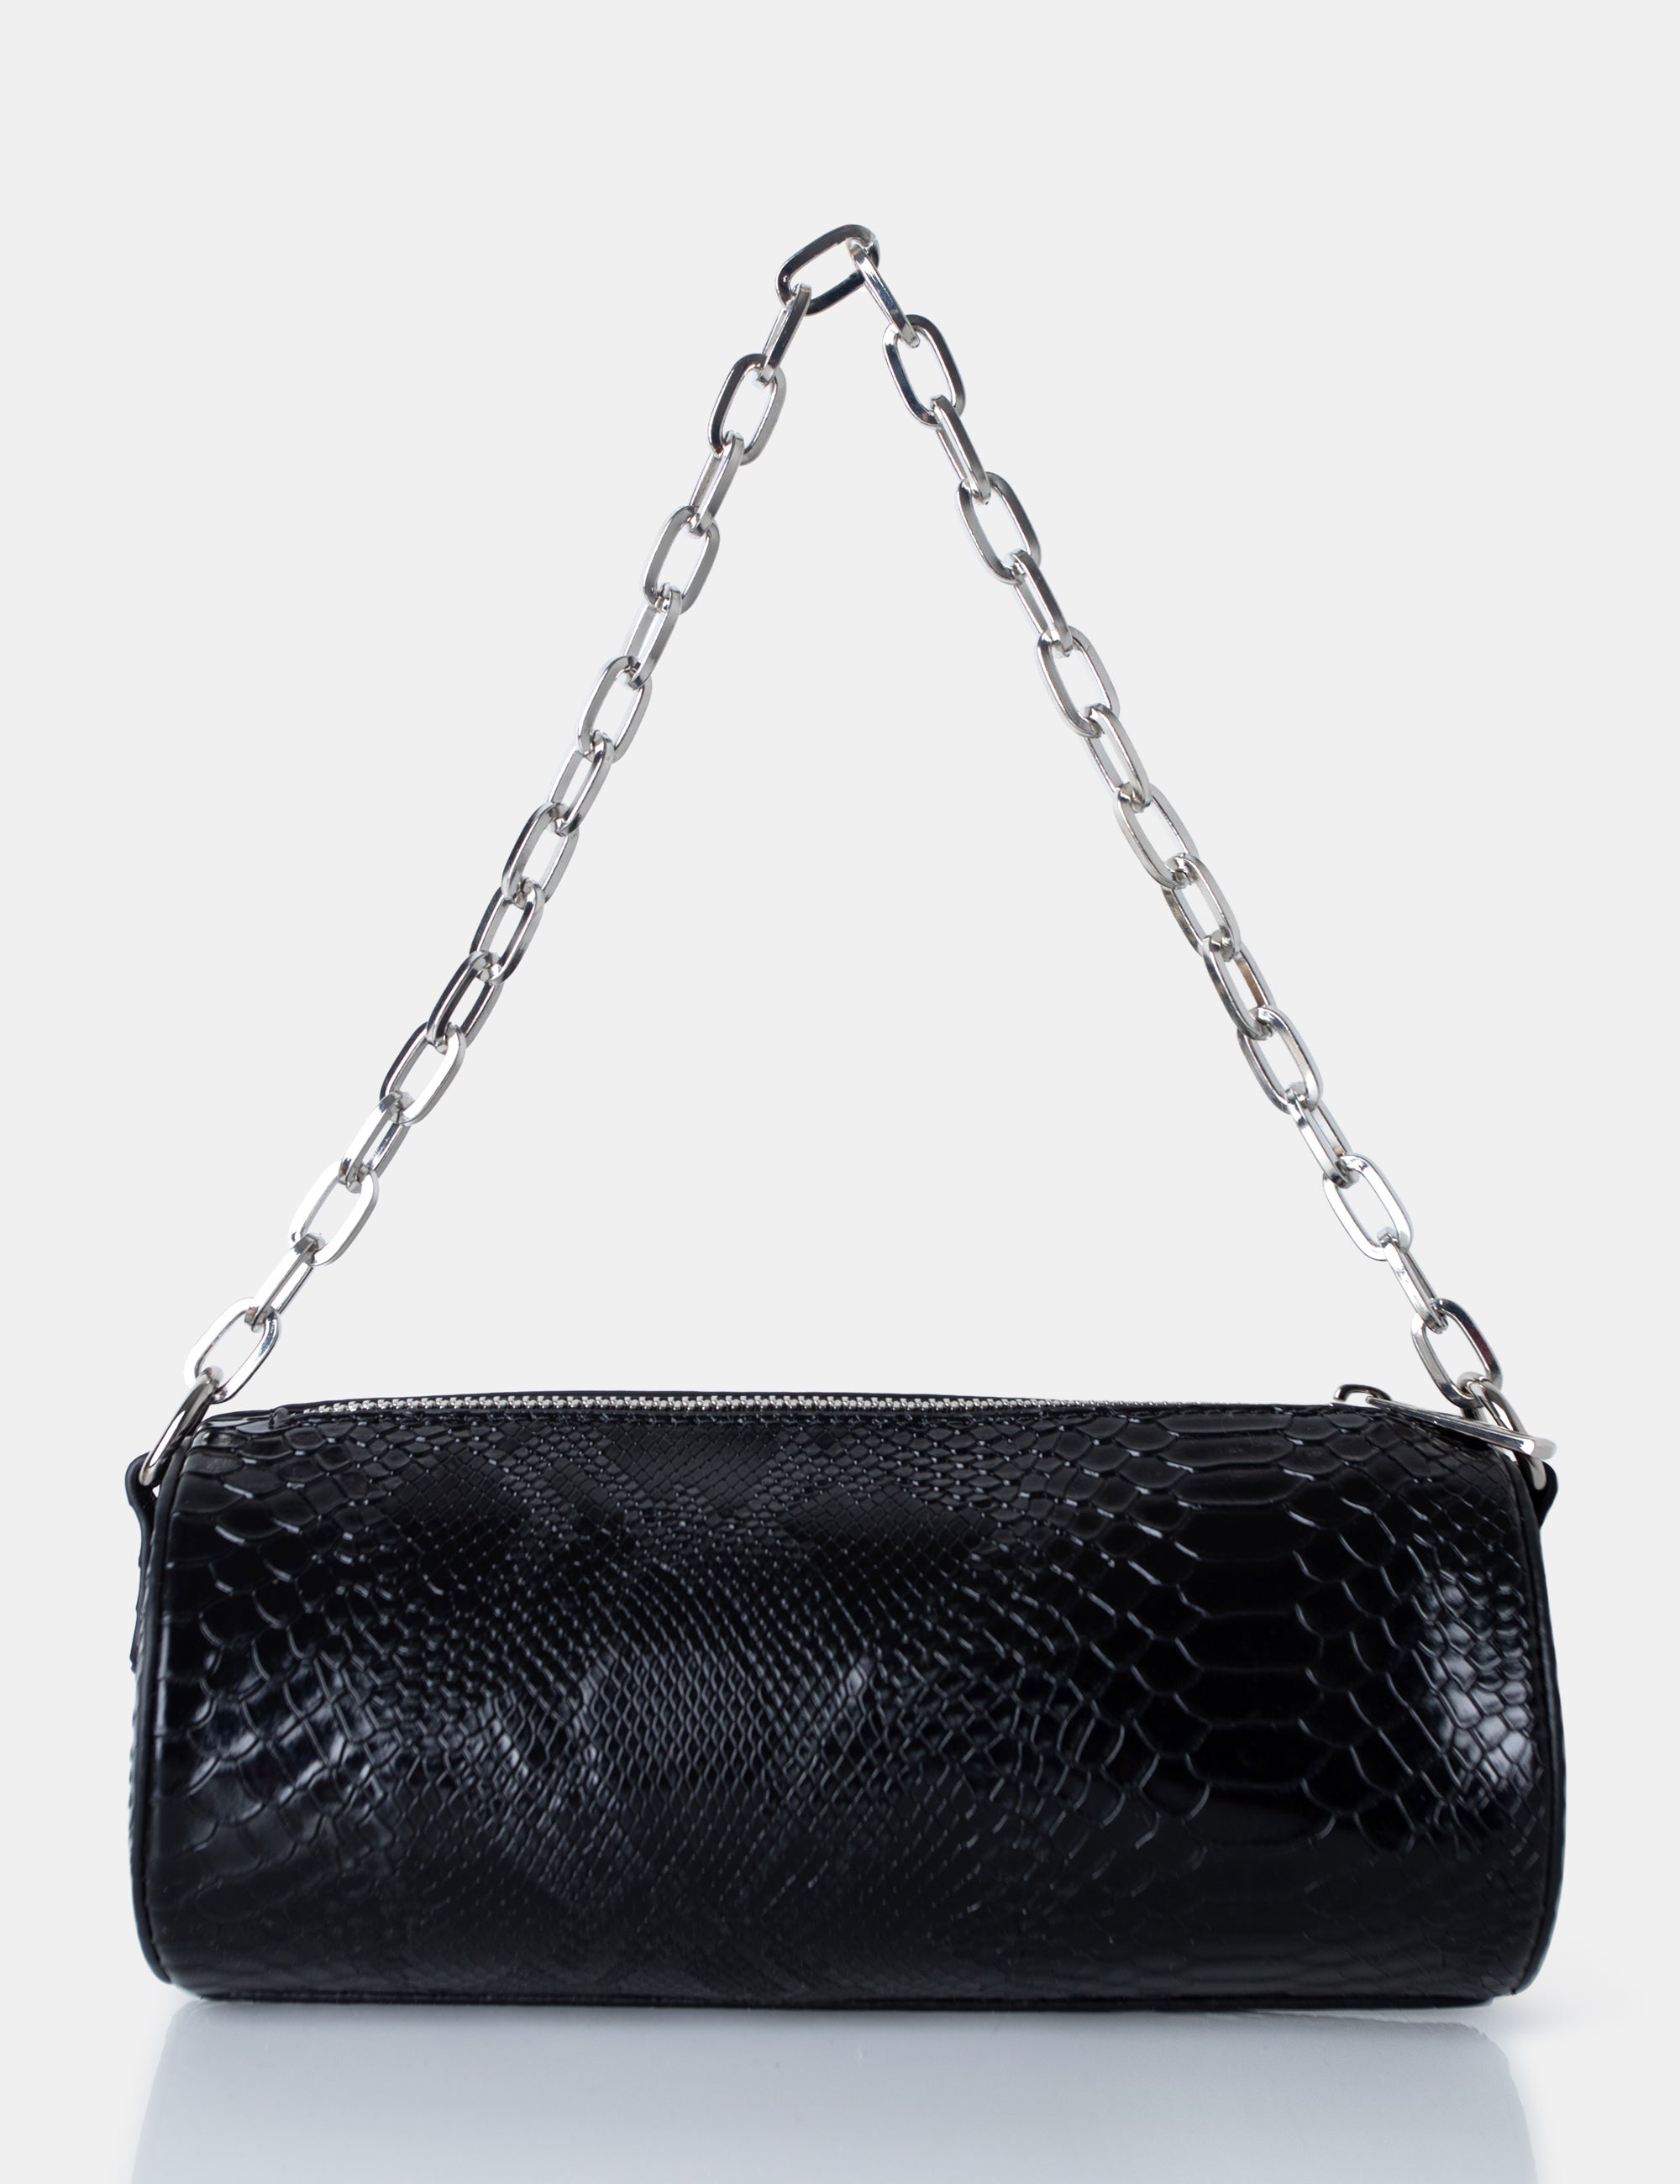 The Claudia Black Croc Shoulder Bag product